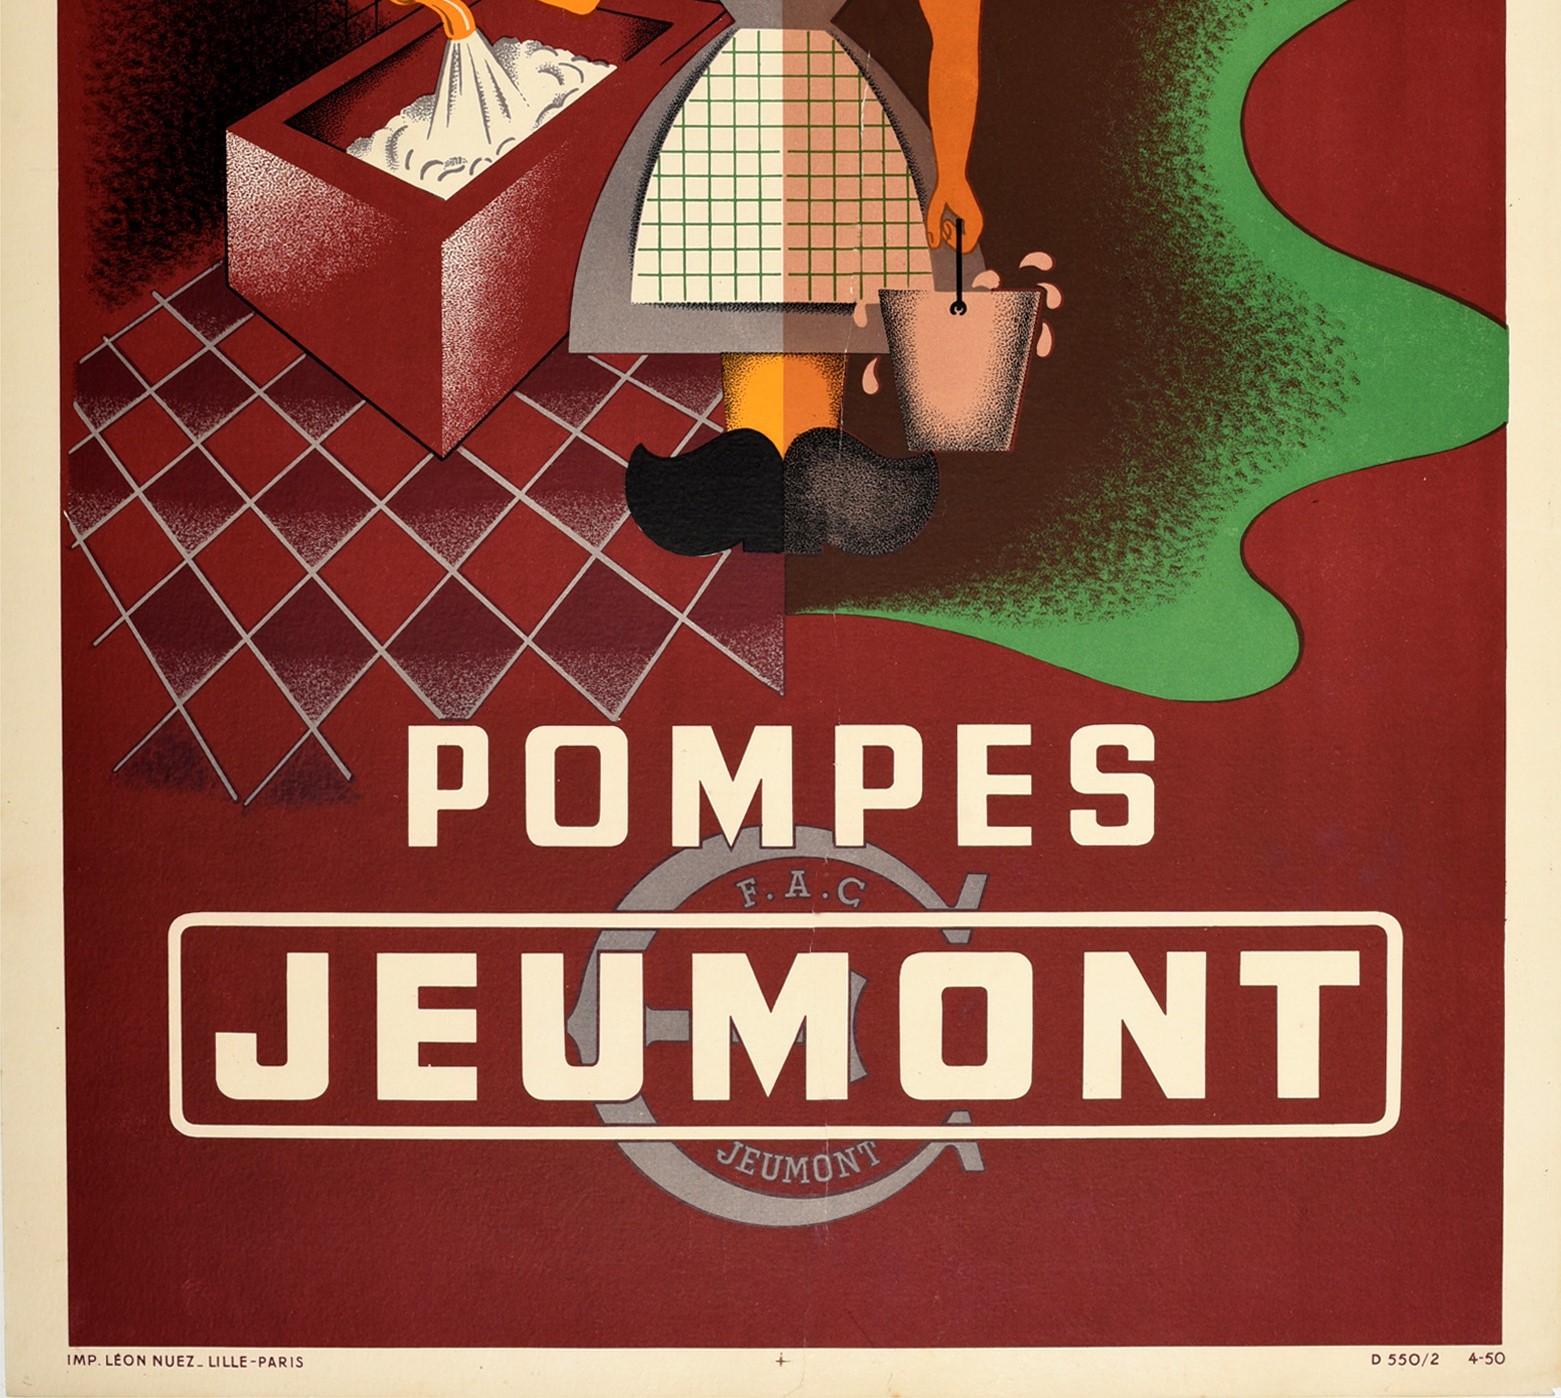 Mid-Century Modern Original Vintage Advertising Poster Pompes Jeumont Water Pumps Modernist Design For Sale